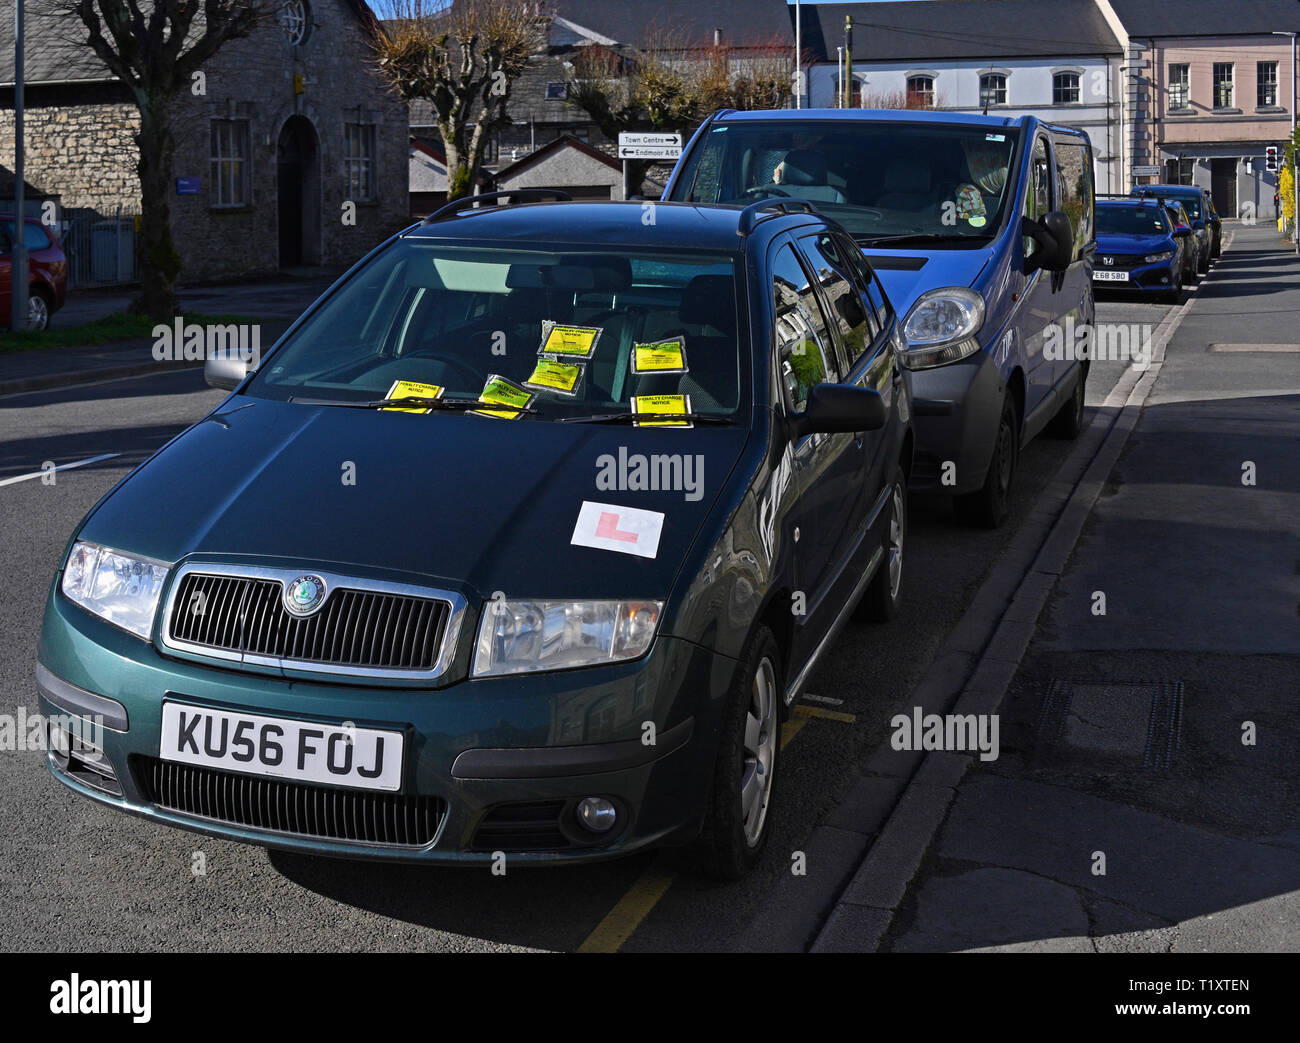 Voiture en stationnement illégal sur la ligne jaune avec six avis de pénalité. Parkside Road, Kendal, Cumbria, Angleterre, Royaume-Uni, Europe. Banque D'Images